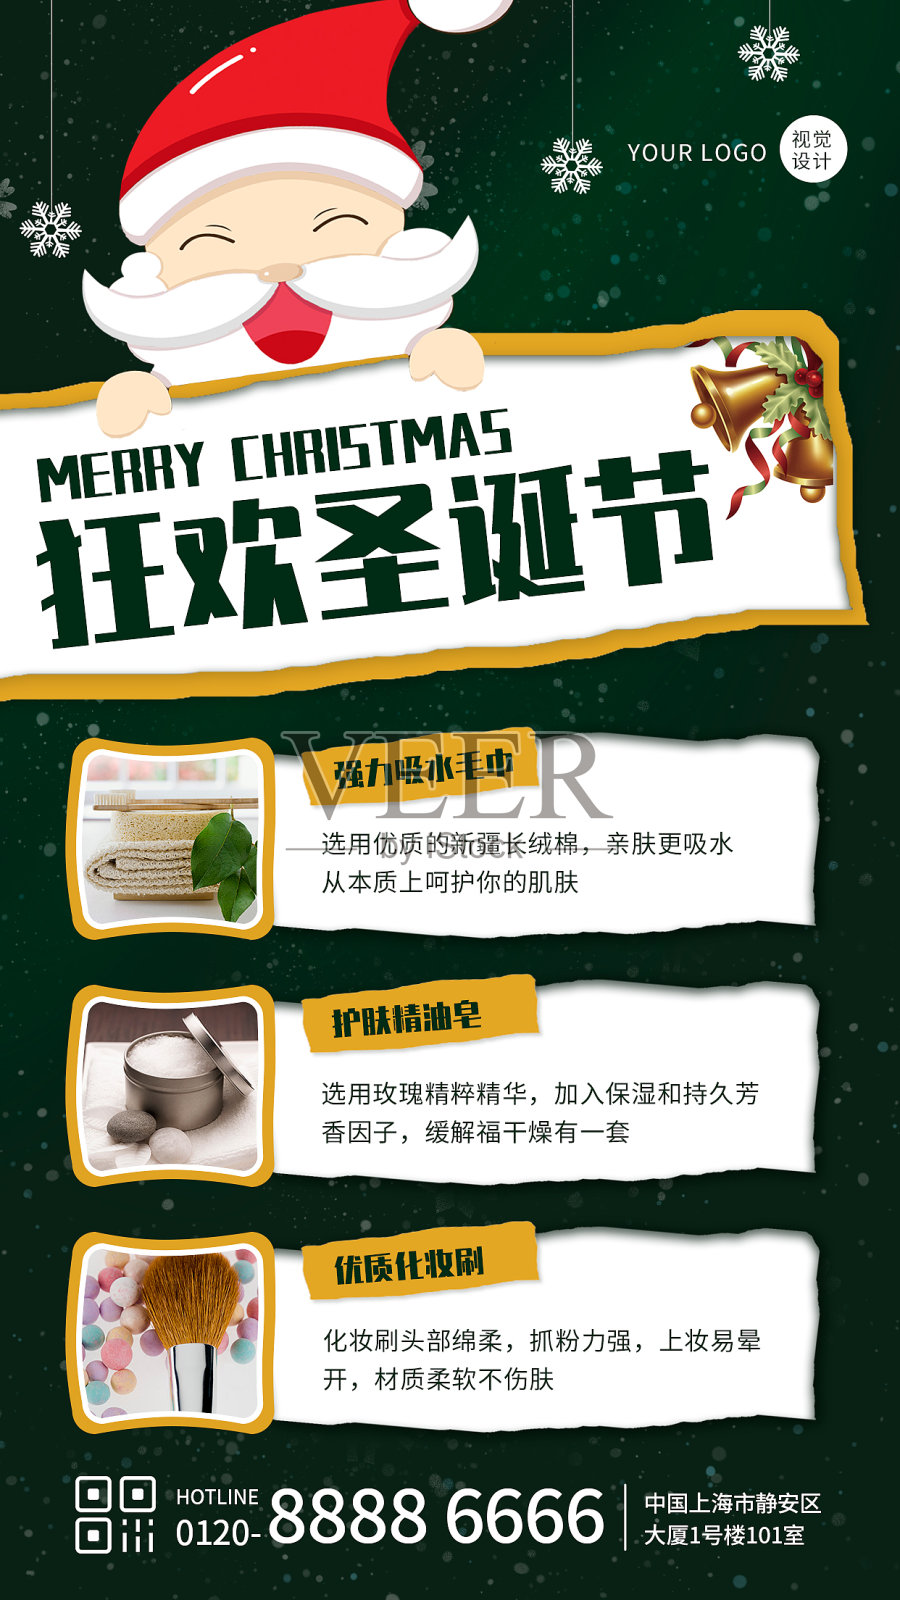 绿色创意风圣诞节促销手机海报设计模板素材